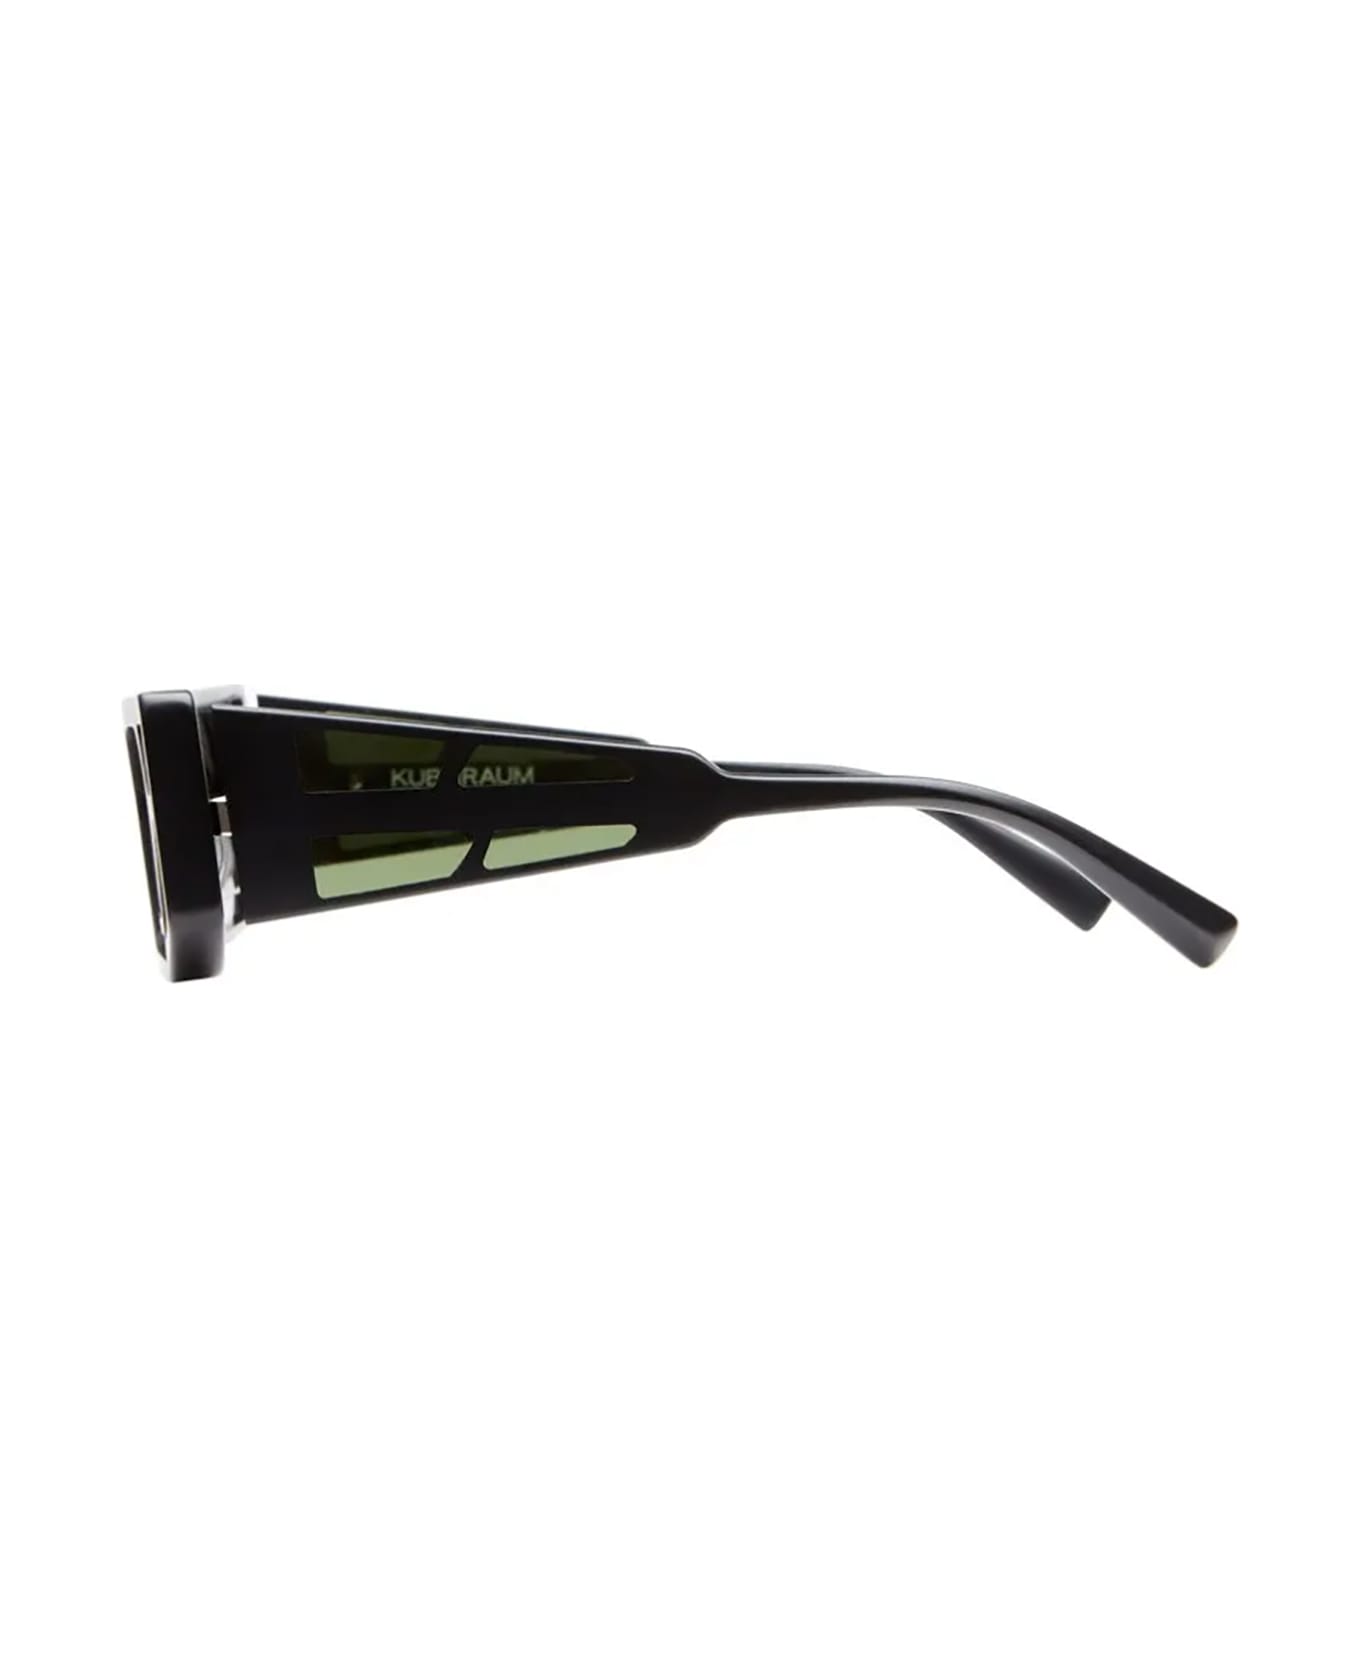 Kuboraum T9 Sunglasses - Bm サングラス